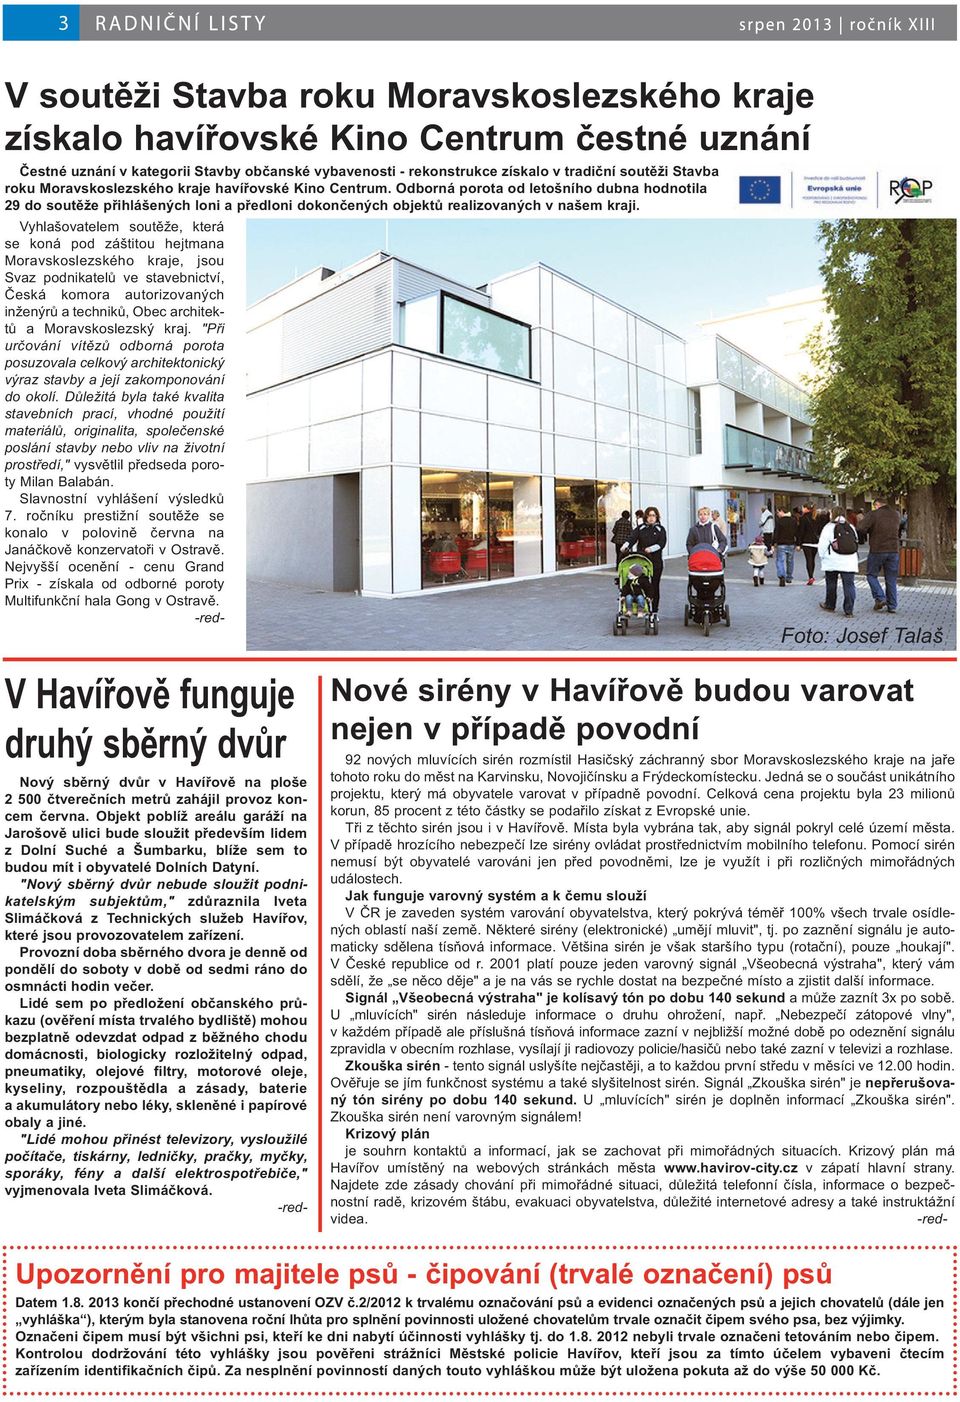 Také Havířov má "protihlukovou vyhlášku" - PDF Stažení zdarma